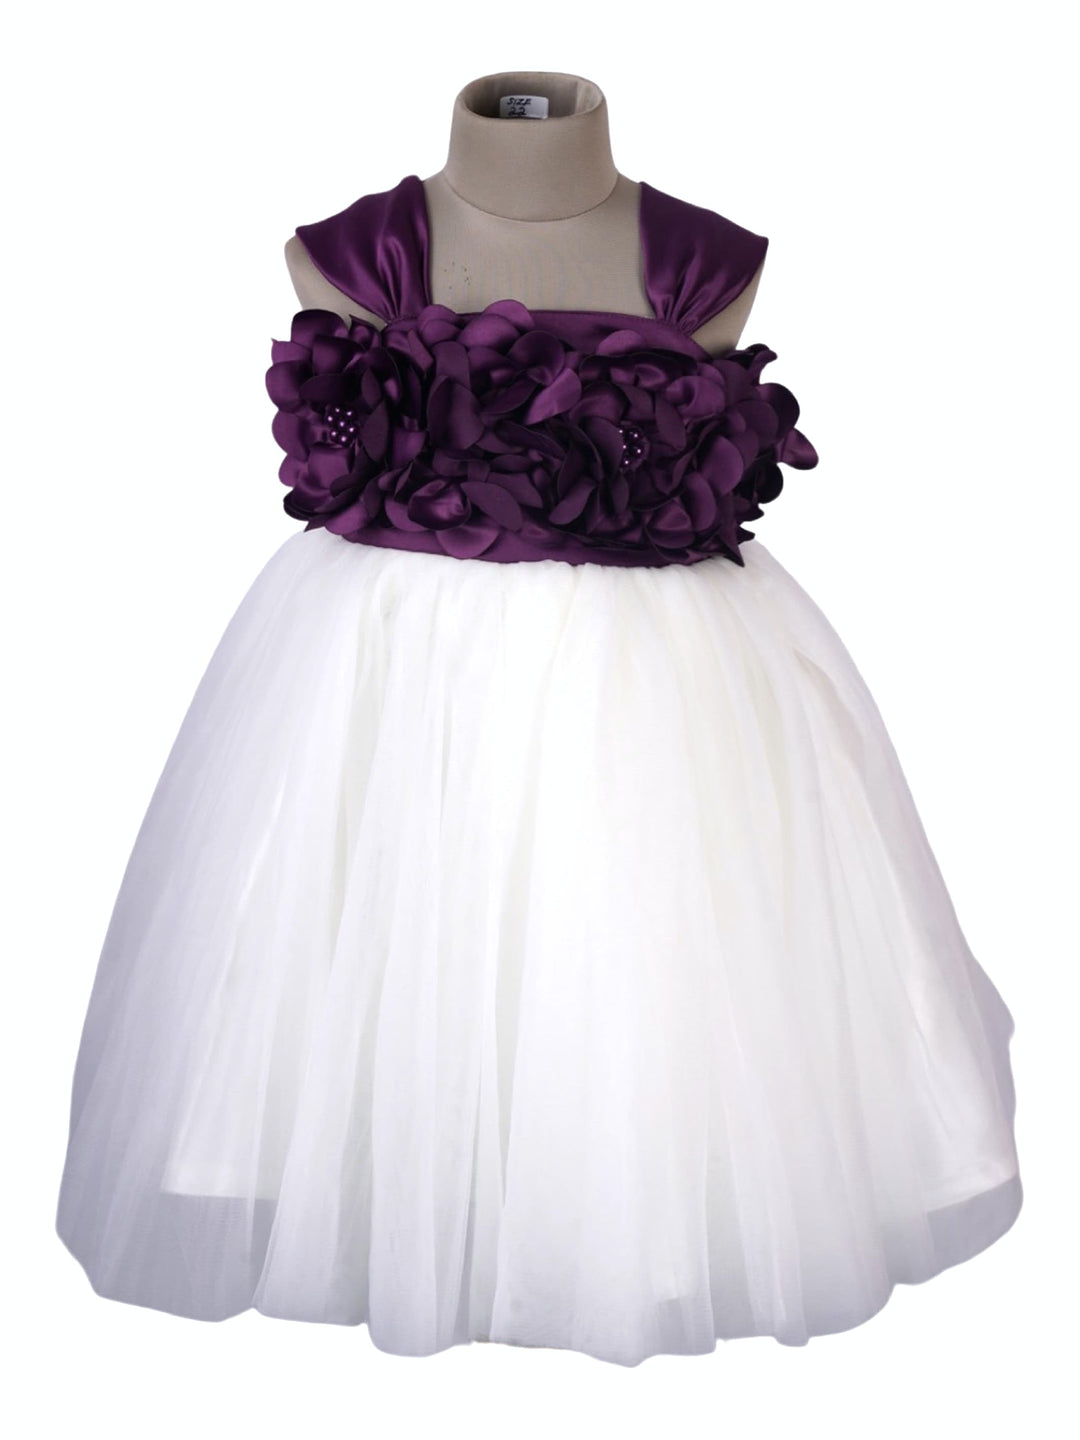 The Nesavu Party Frock Purple Soft Shimmer Net Party Wear Frock for Little Girl psr silks Nesavu 16 (1Y) / Purple PF29